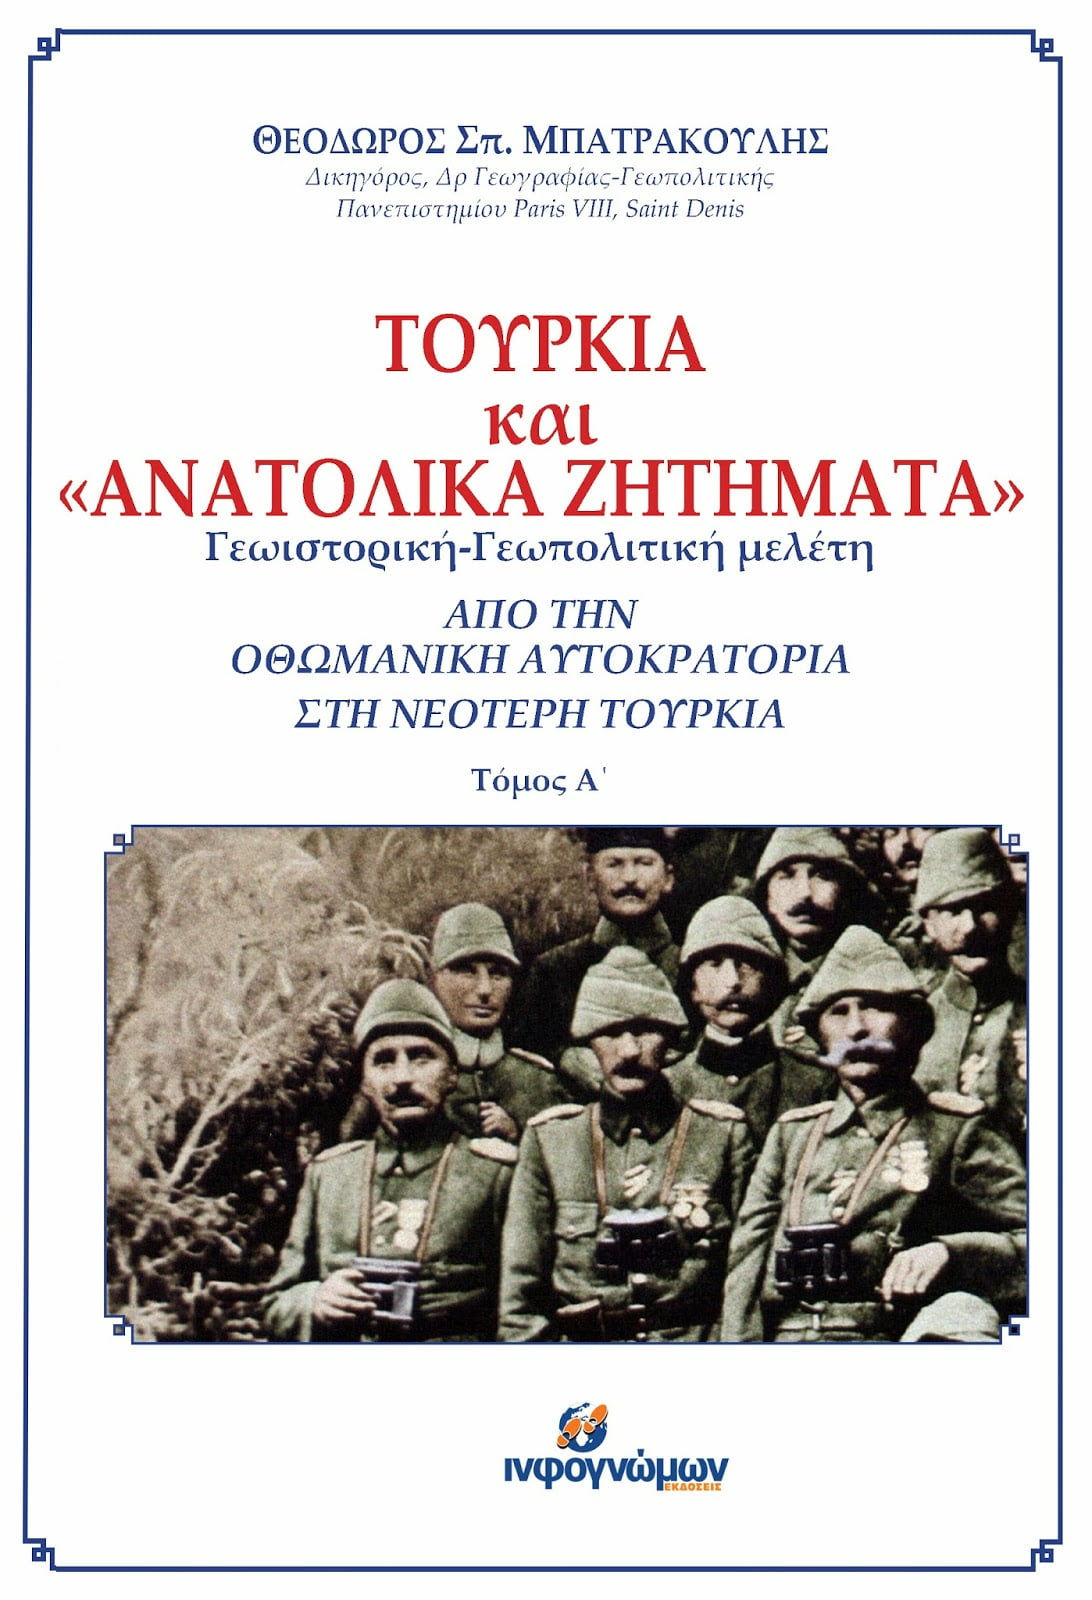 Νέα έκδοση: “Τουρκία και Ανατολικά Ζητήματα”, του Θόδωρου Μπατρακούλη